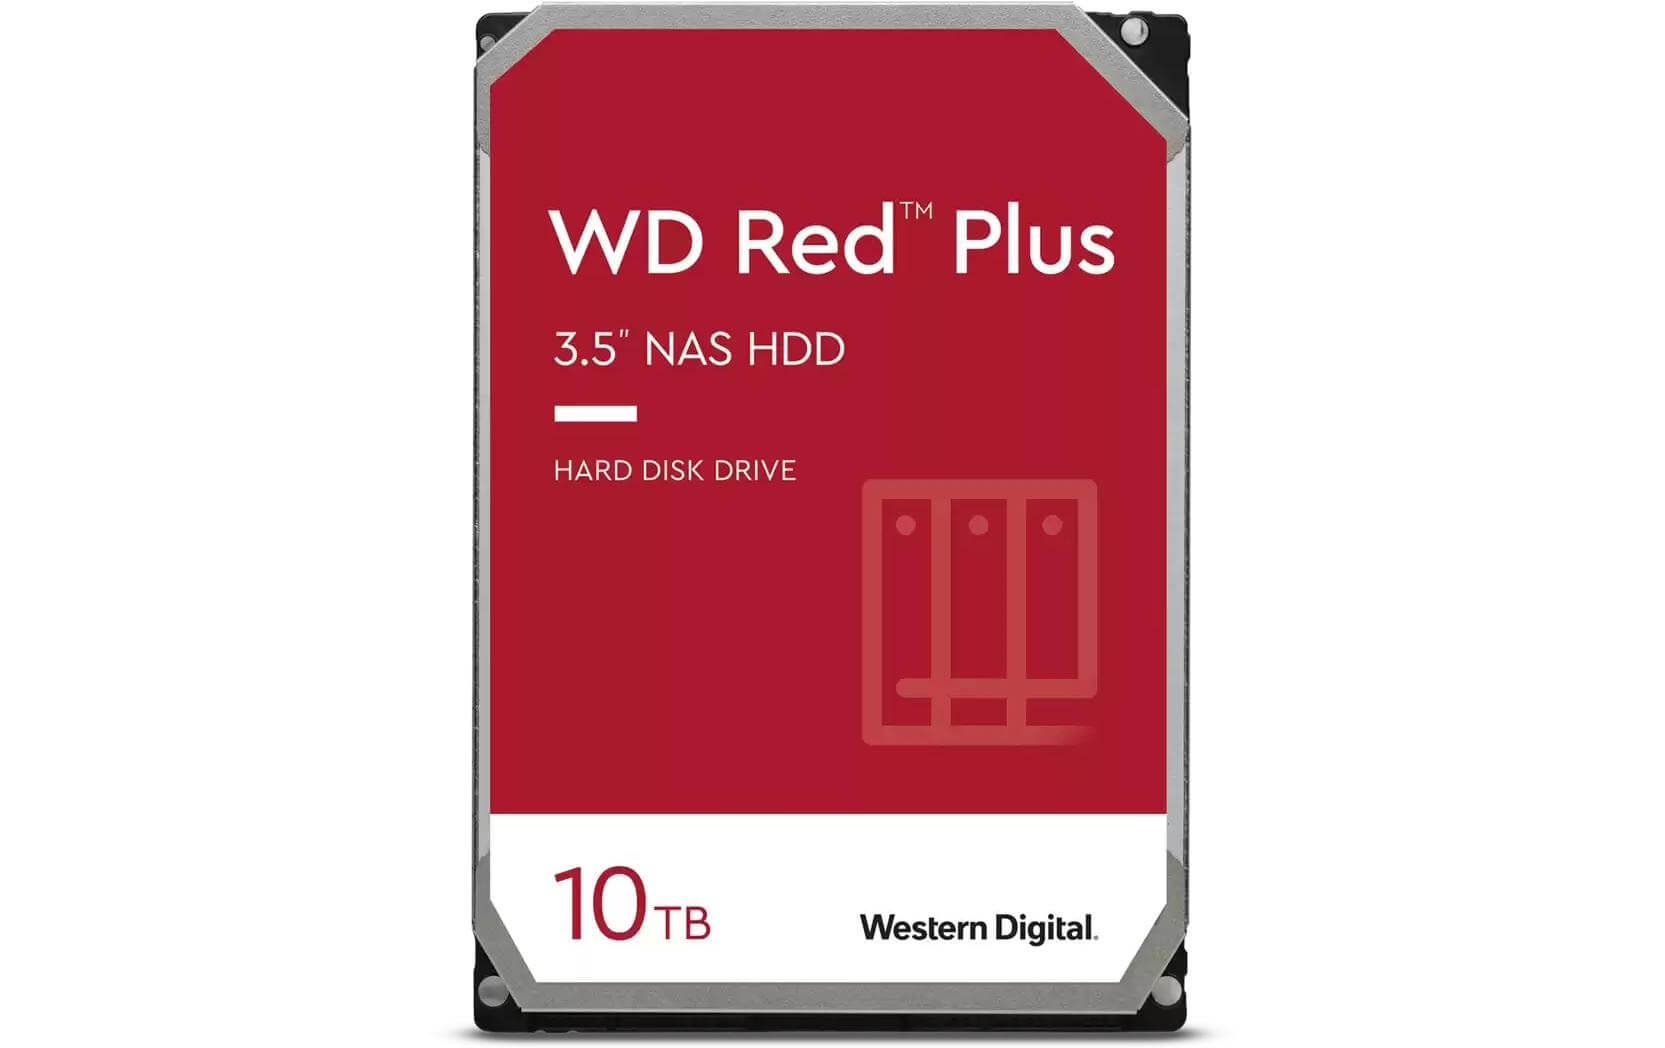 WD Disco rigido Western Digital WD Red Plus 3 5" SATA 10 TB wd